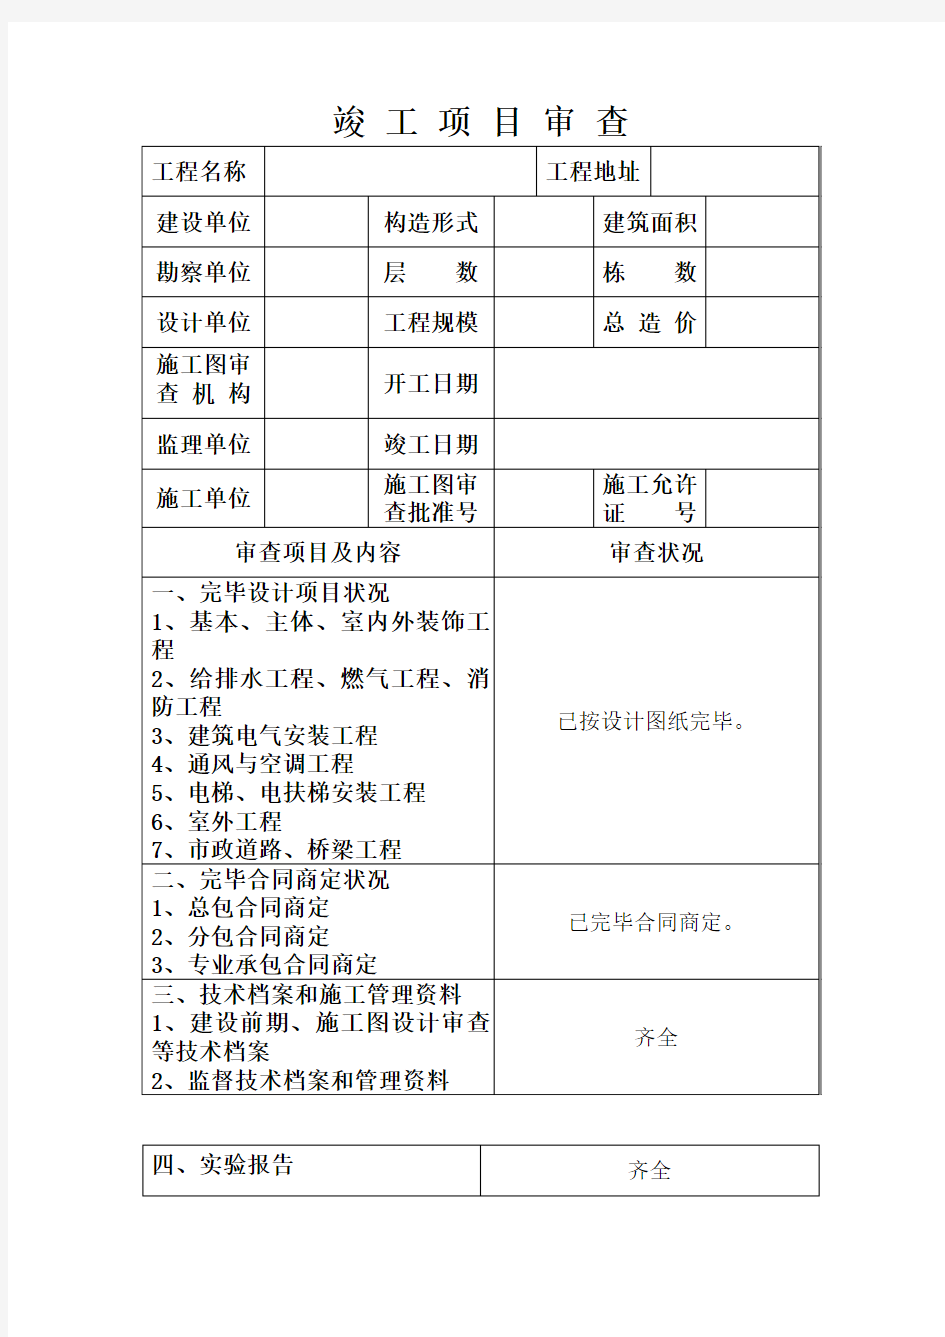 河北省建设工程竣工验收报告格式及填写范例样本